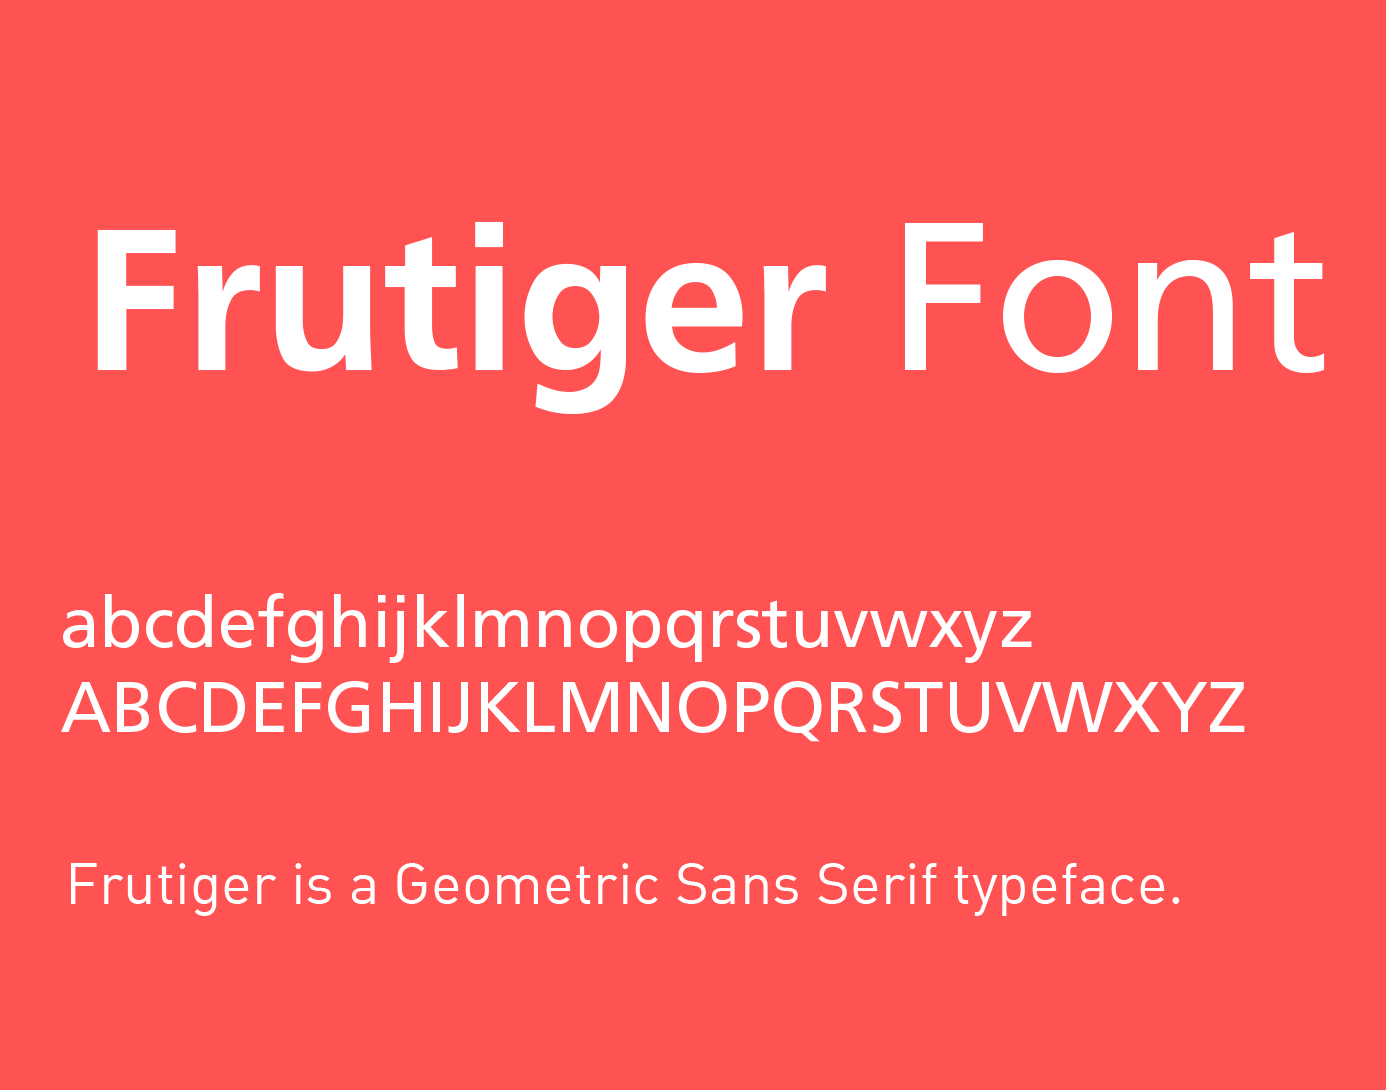 frutiger font free